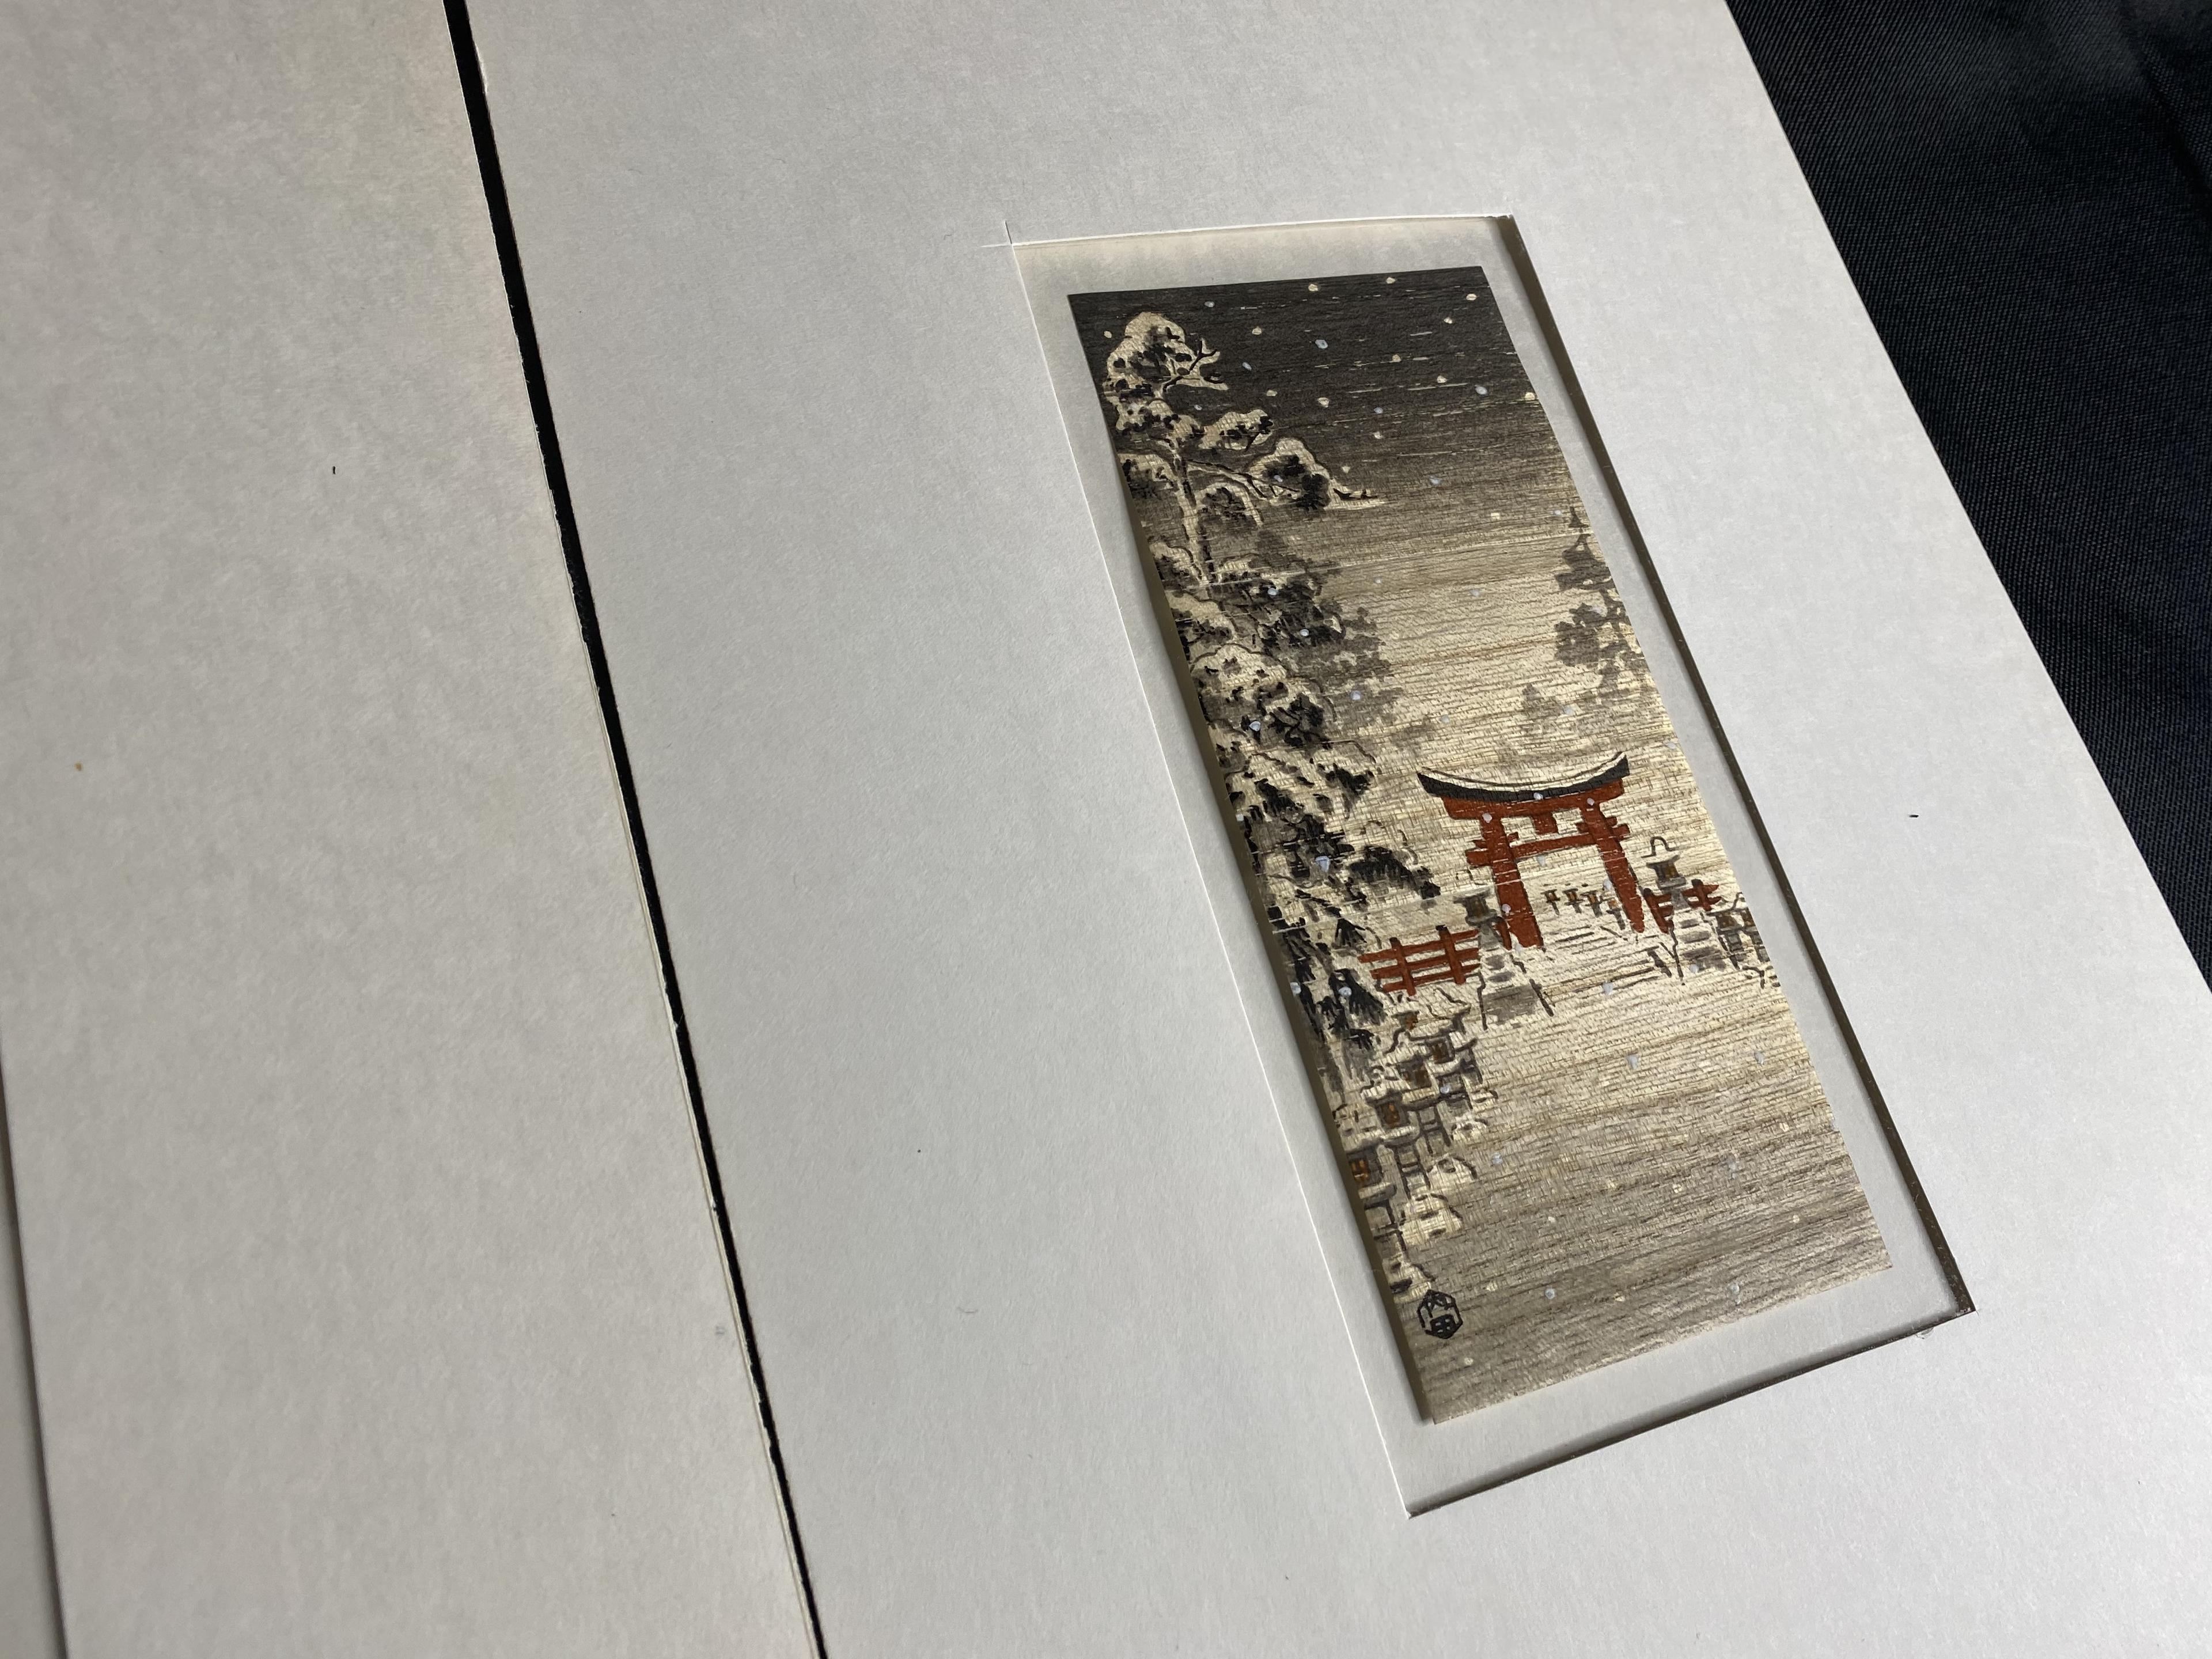 2 Japanese Woodblock Prints by Benji Asada